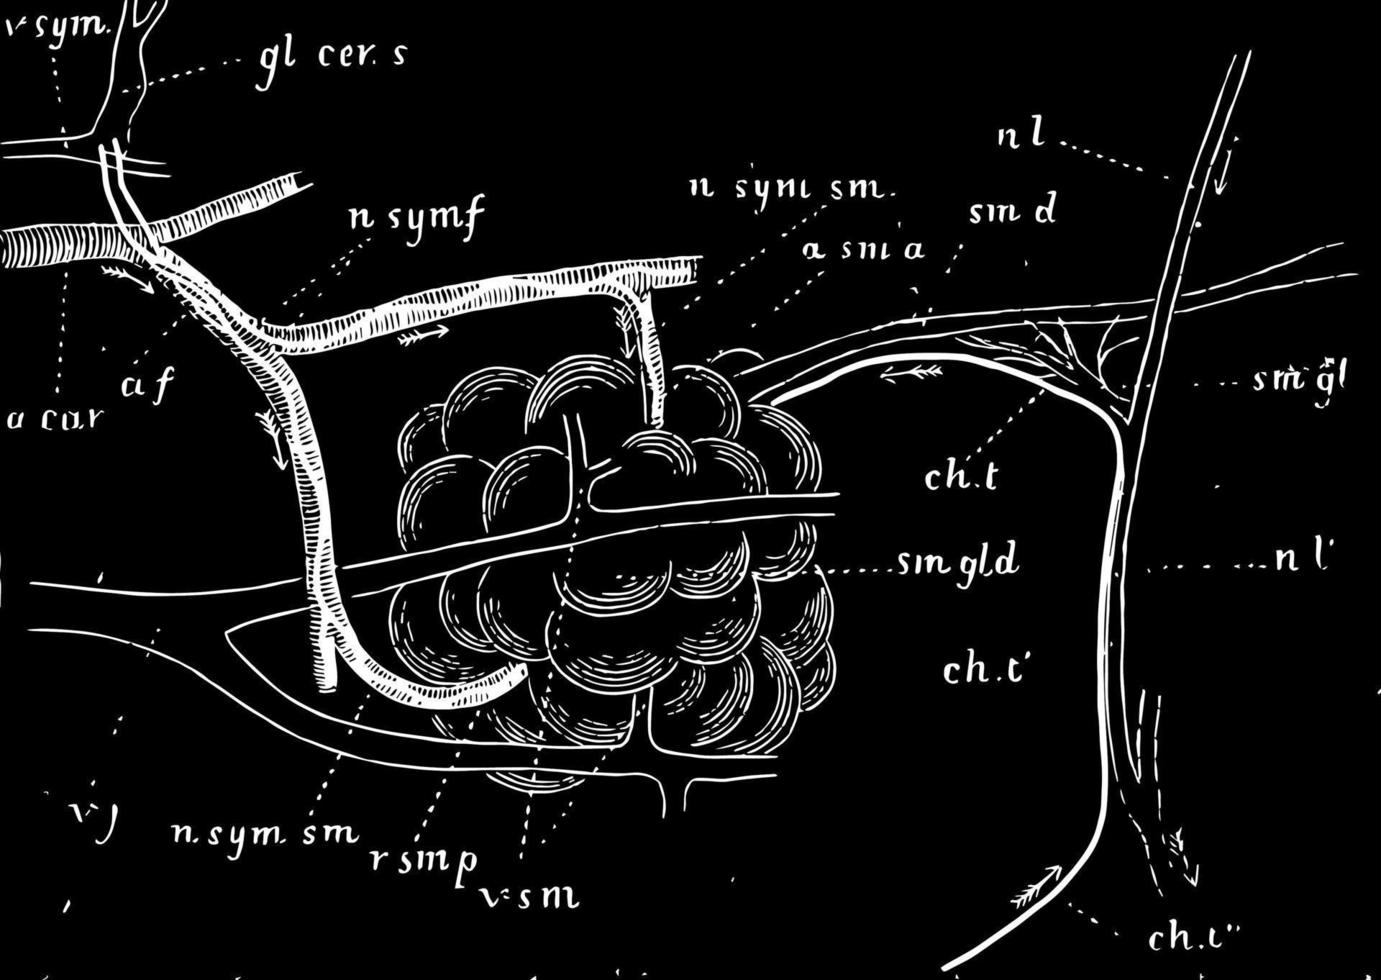 glándula submaxilar de perro con nervios y vasos sanguíneos, ilustración antigua. vector